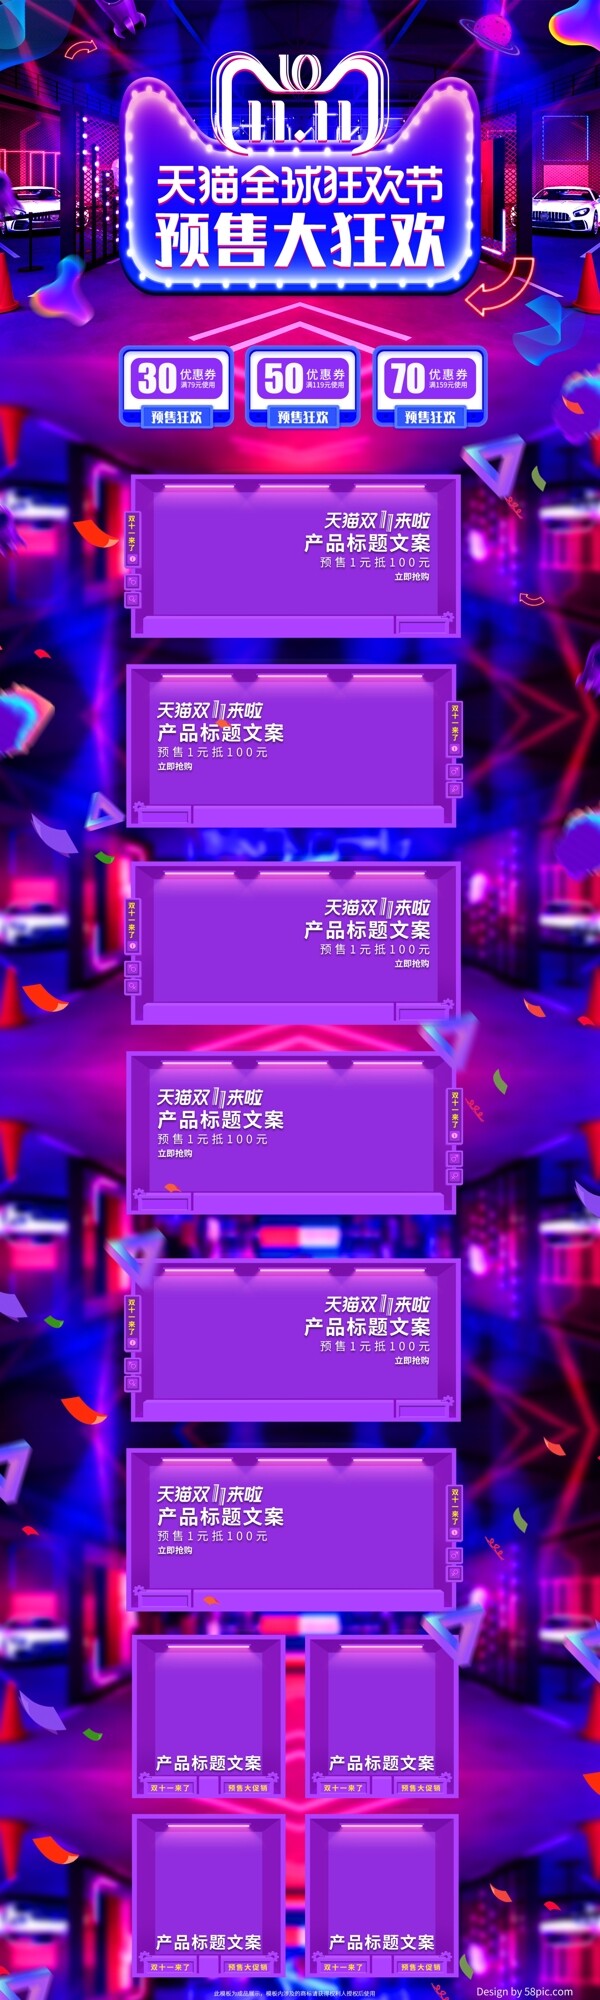 紫色欧普炫酷双十一预售潮流时尚电商首页